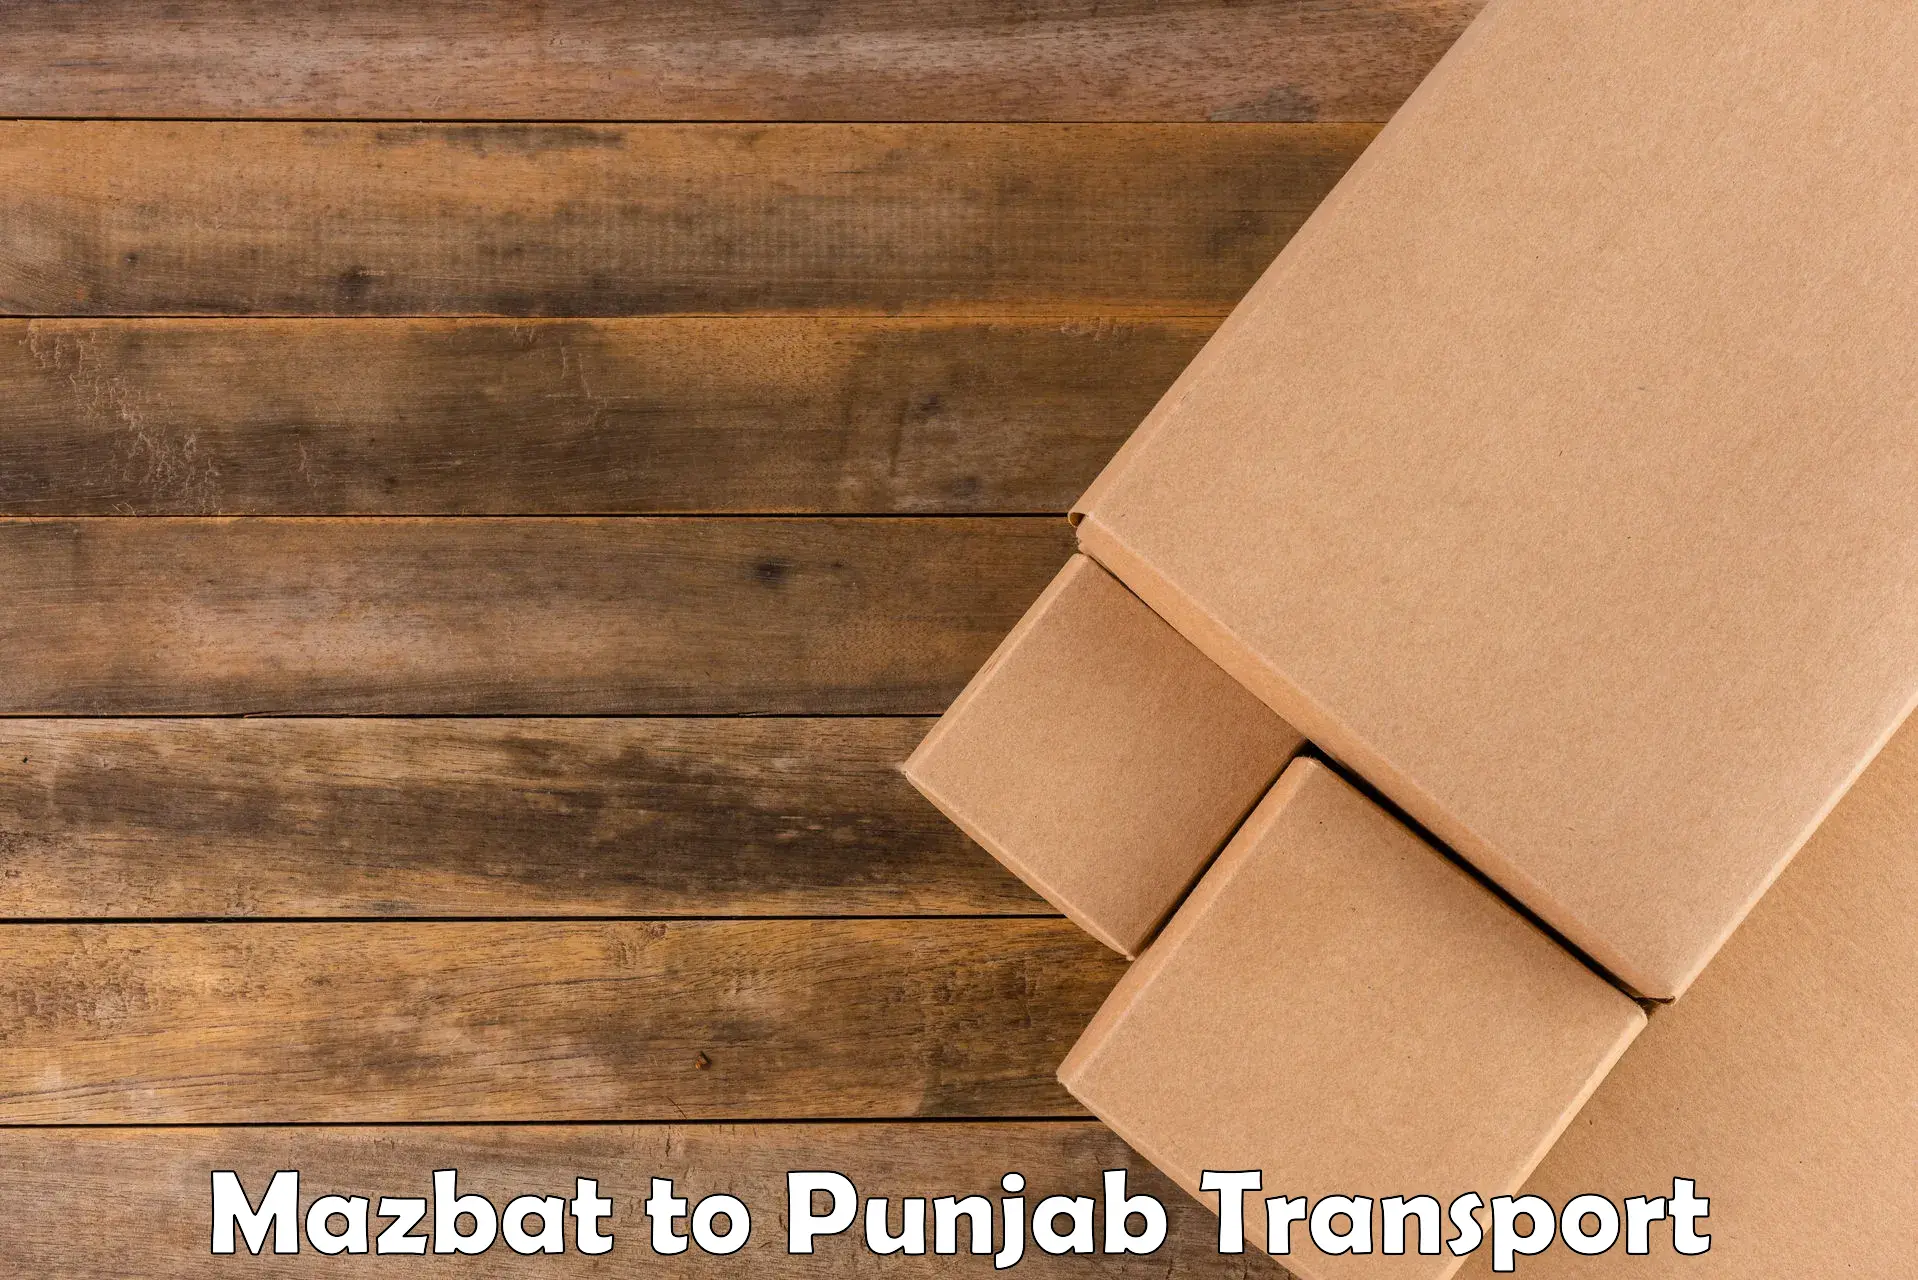 Express transport services Mazbat to Abohar